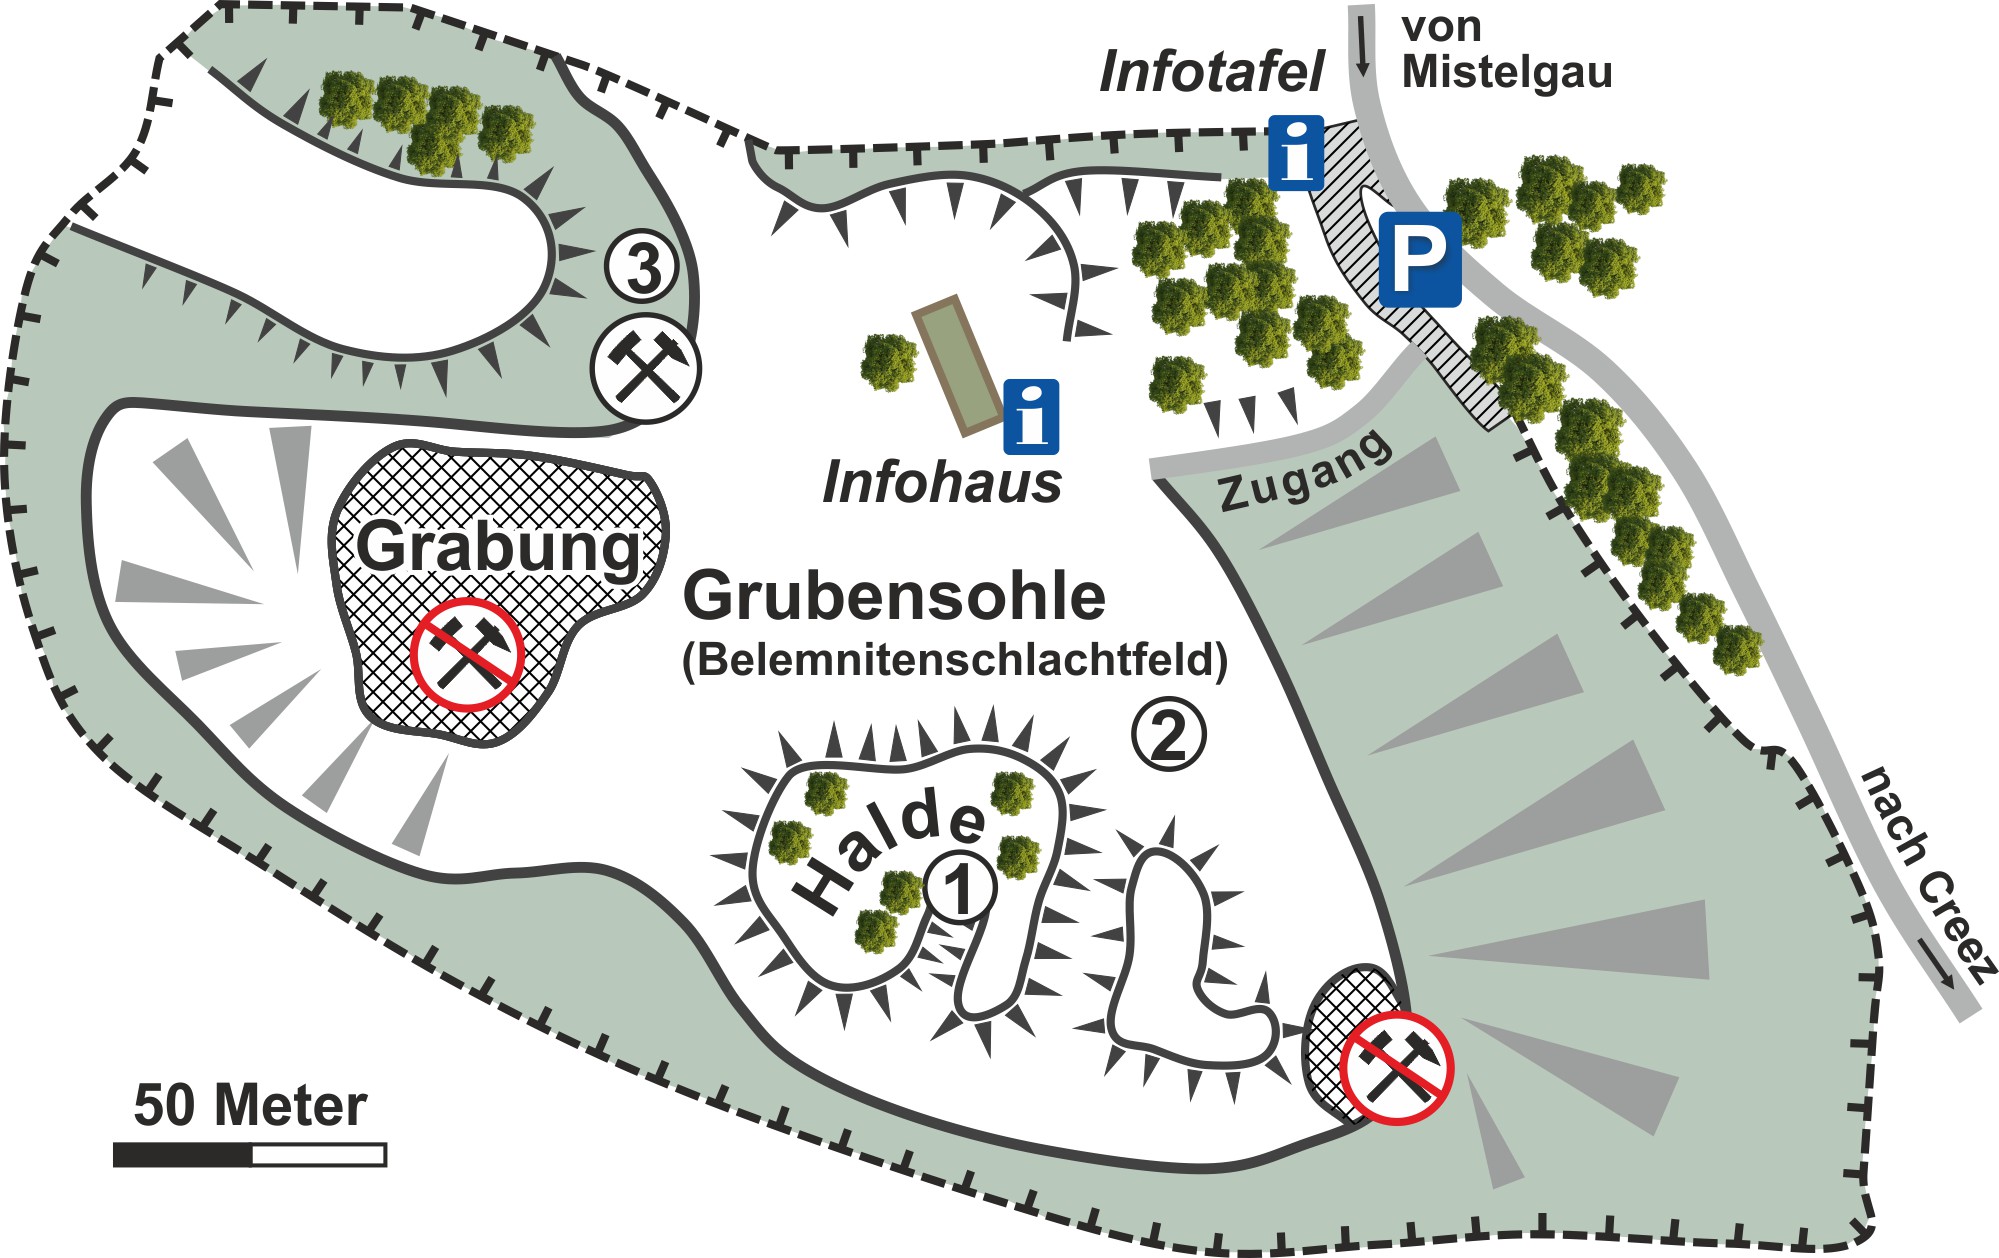 Abb. 6: Tongrube von Mistelgau: Heute ein Ort der Information über Fossilien